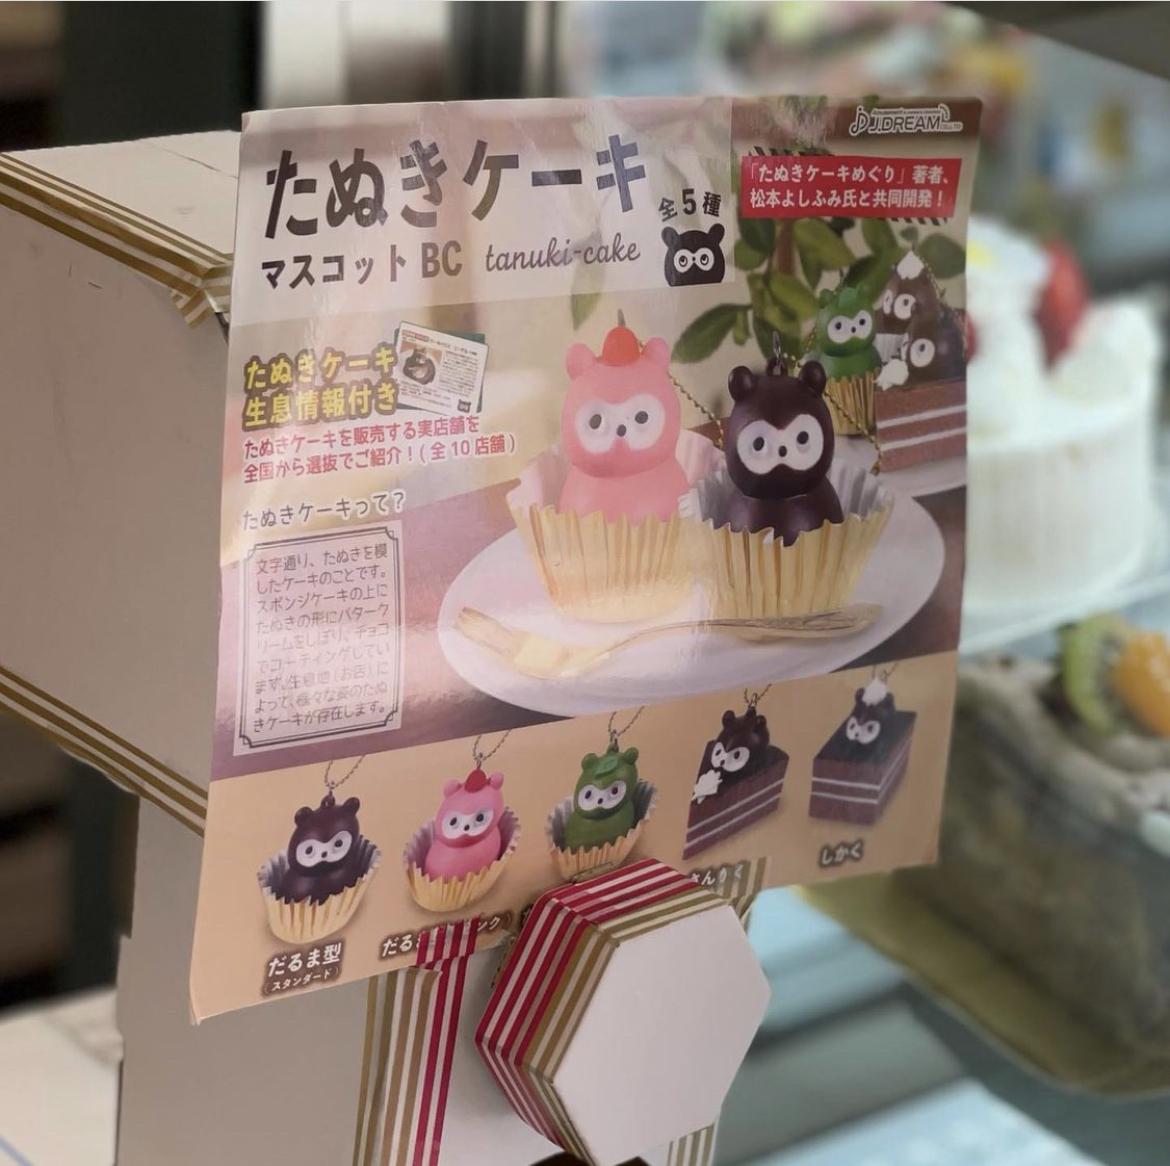 東京板橋 板橋区の老舗洋菓子店のたぬきケーキを捕獲 フランス製菓 デパ地下のまおさんが投稿したフォトブック Sharee